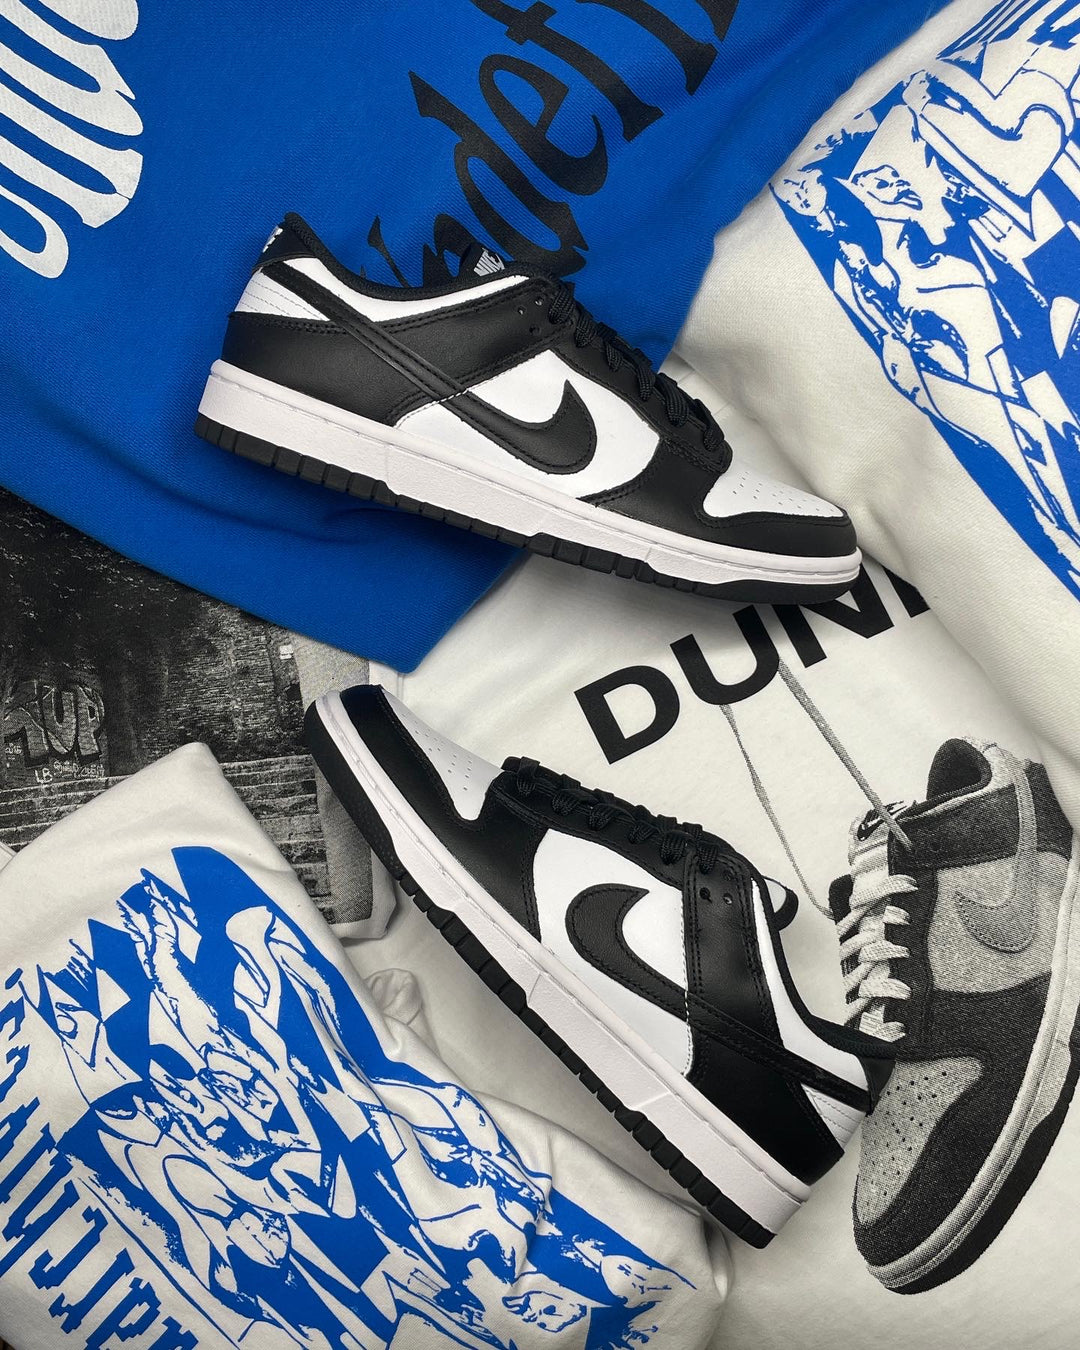 Bredt udvalg af 100% Autentiske Nike Dunk Low, High og SB - Find dine nye Nike Dunks hos Undefined Market